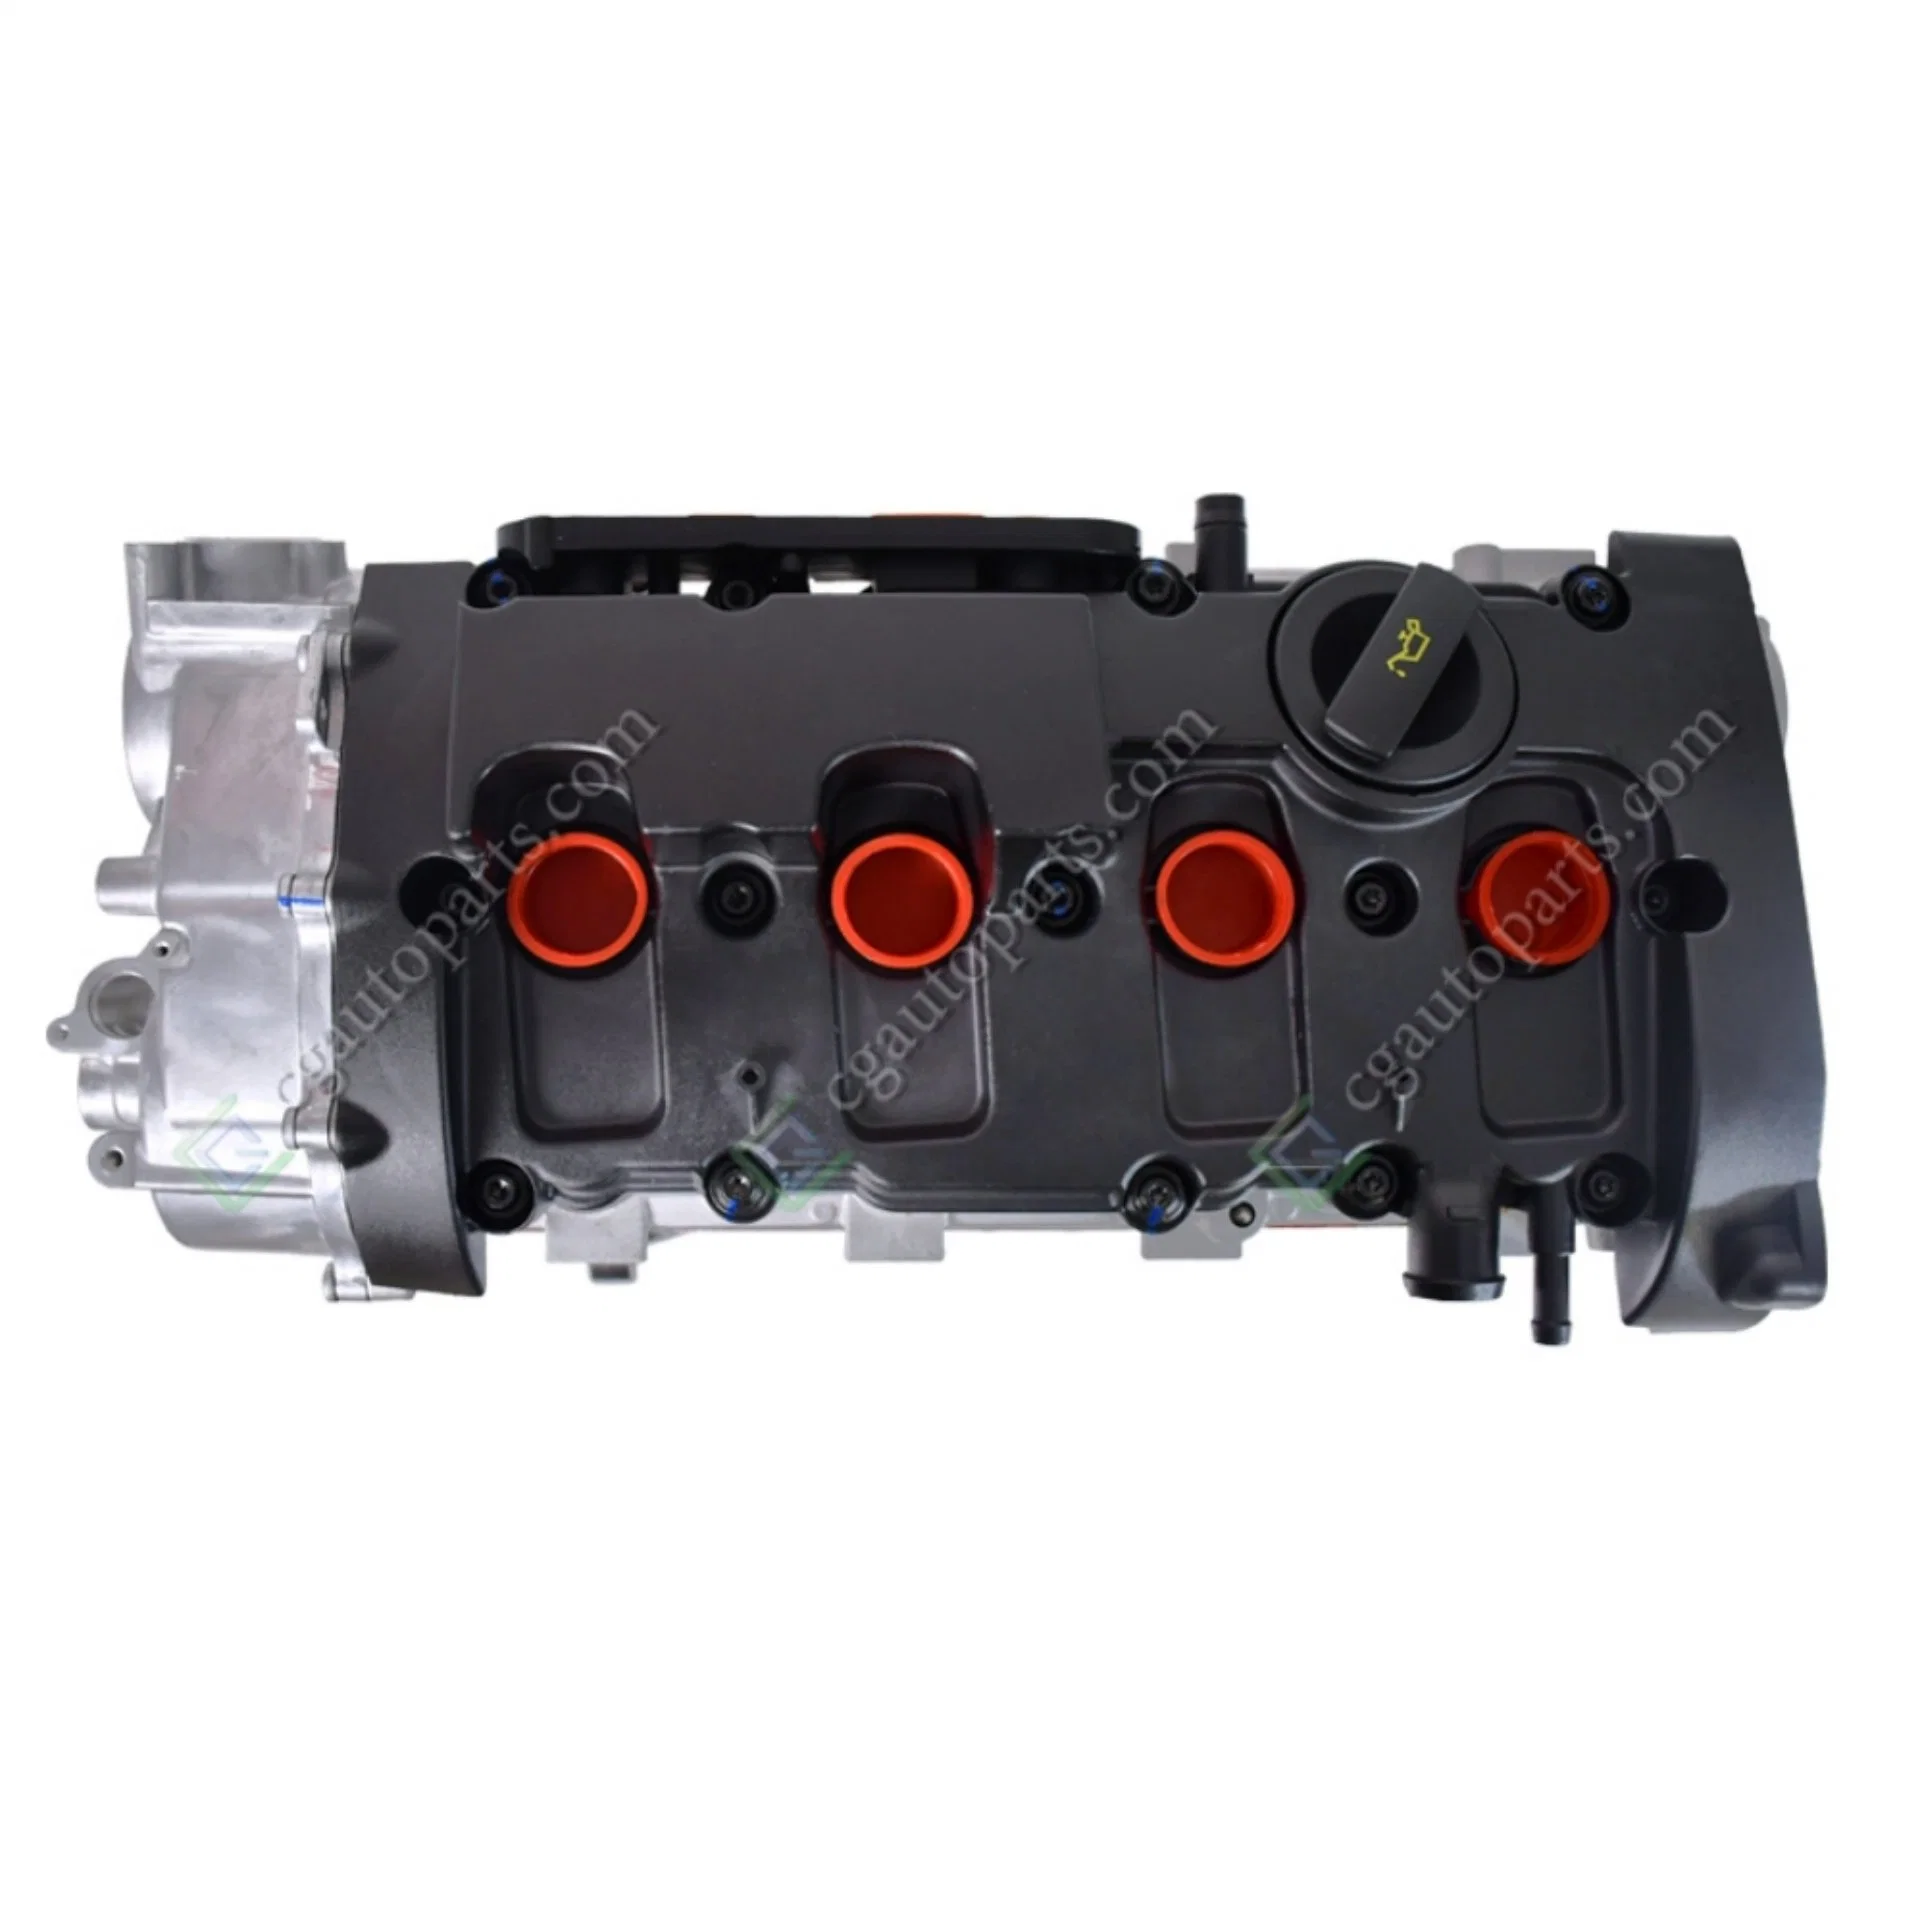 Cg Auto Parts Auto Engine Assembly C6 2.0t Bpj Engine Parts Long Block 06D100033h 06D100032t for Audi C6 Bpj 2.0t